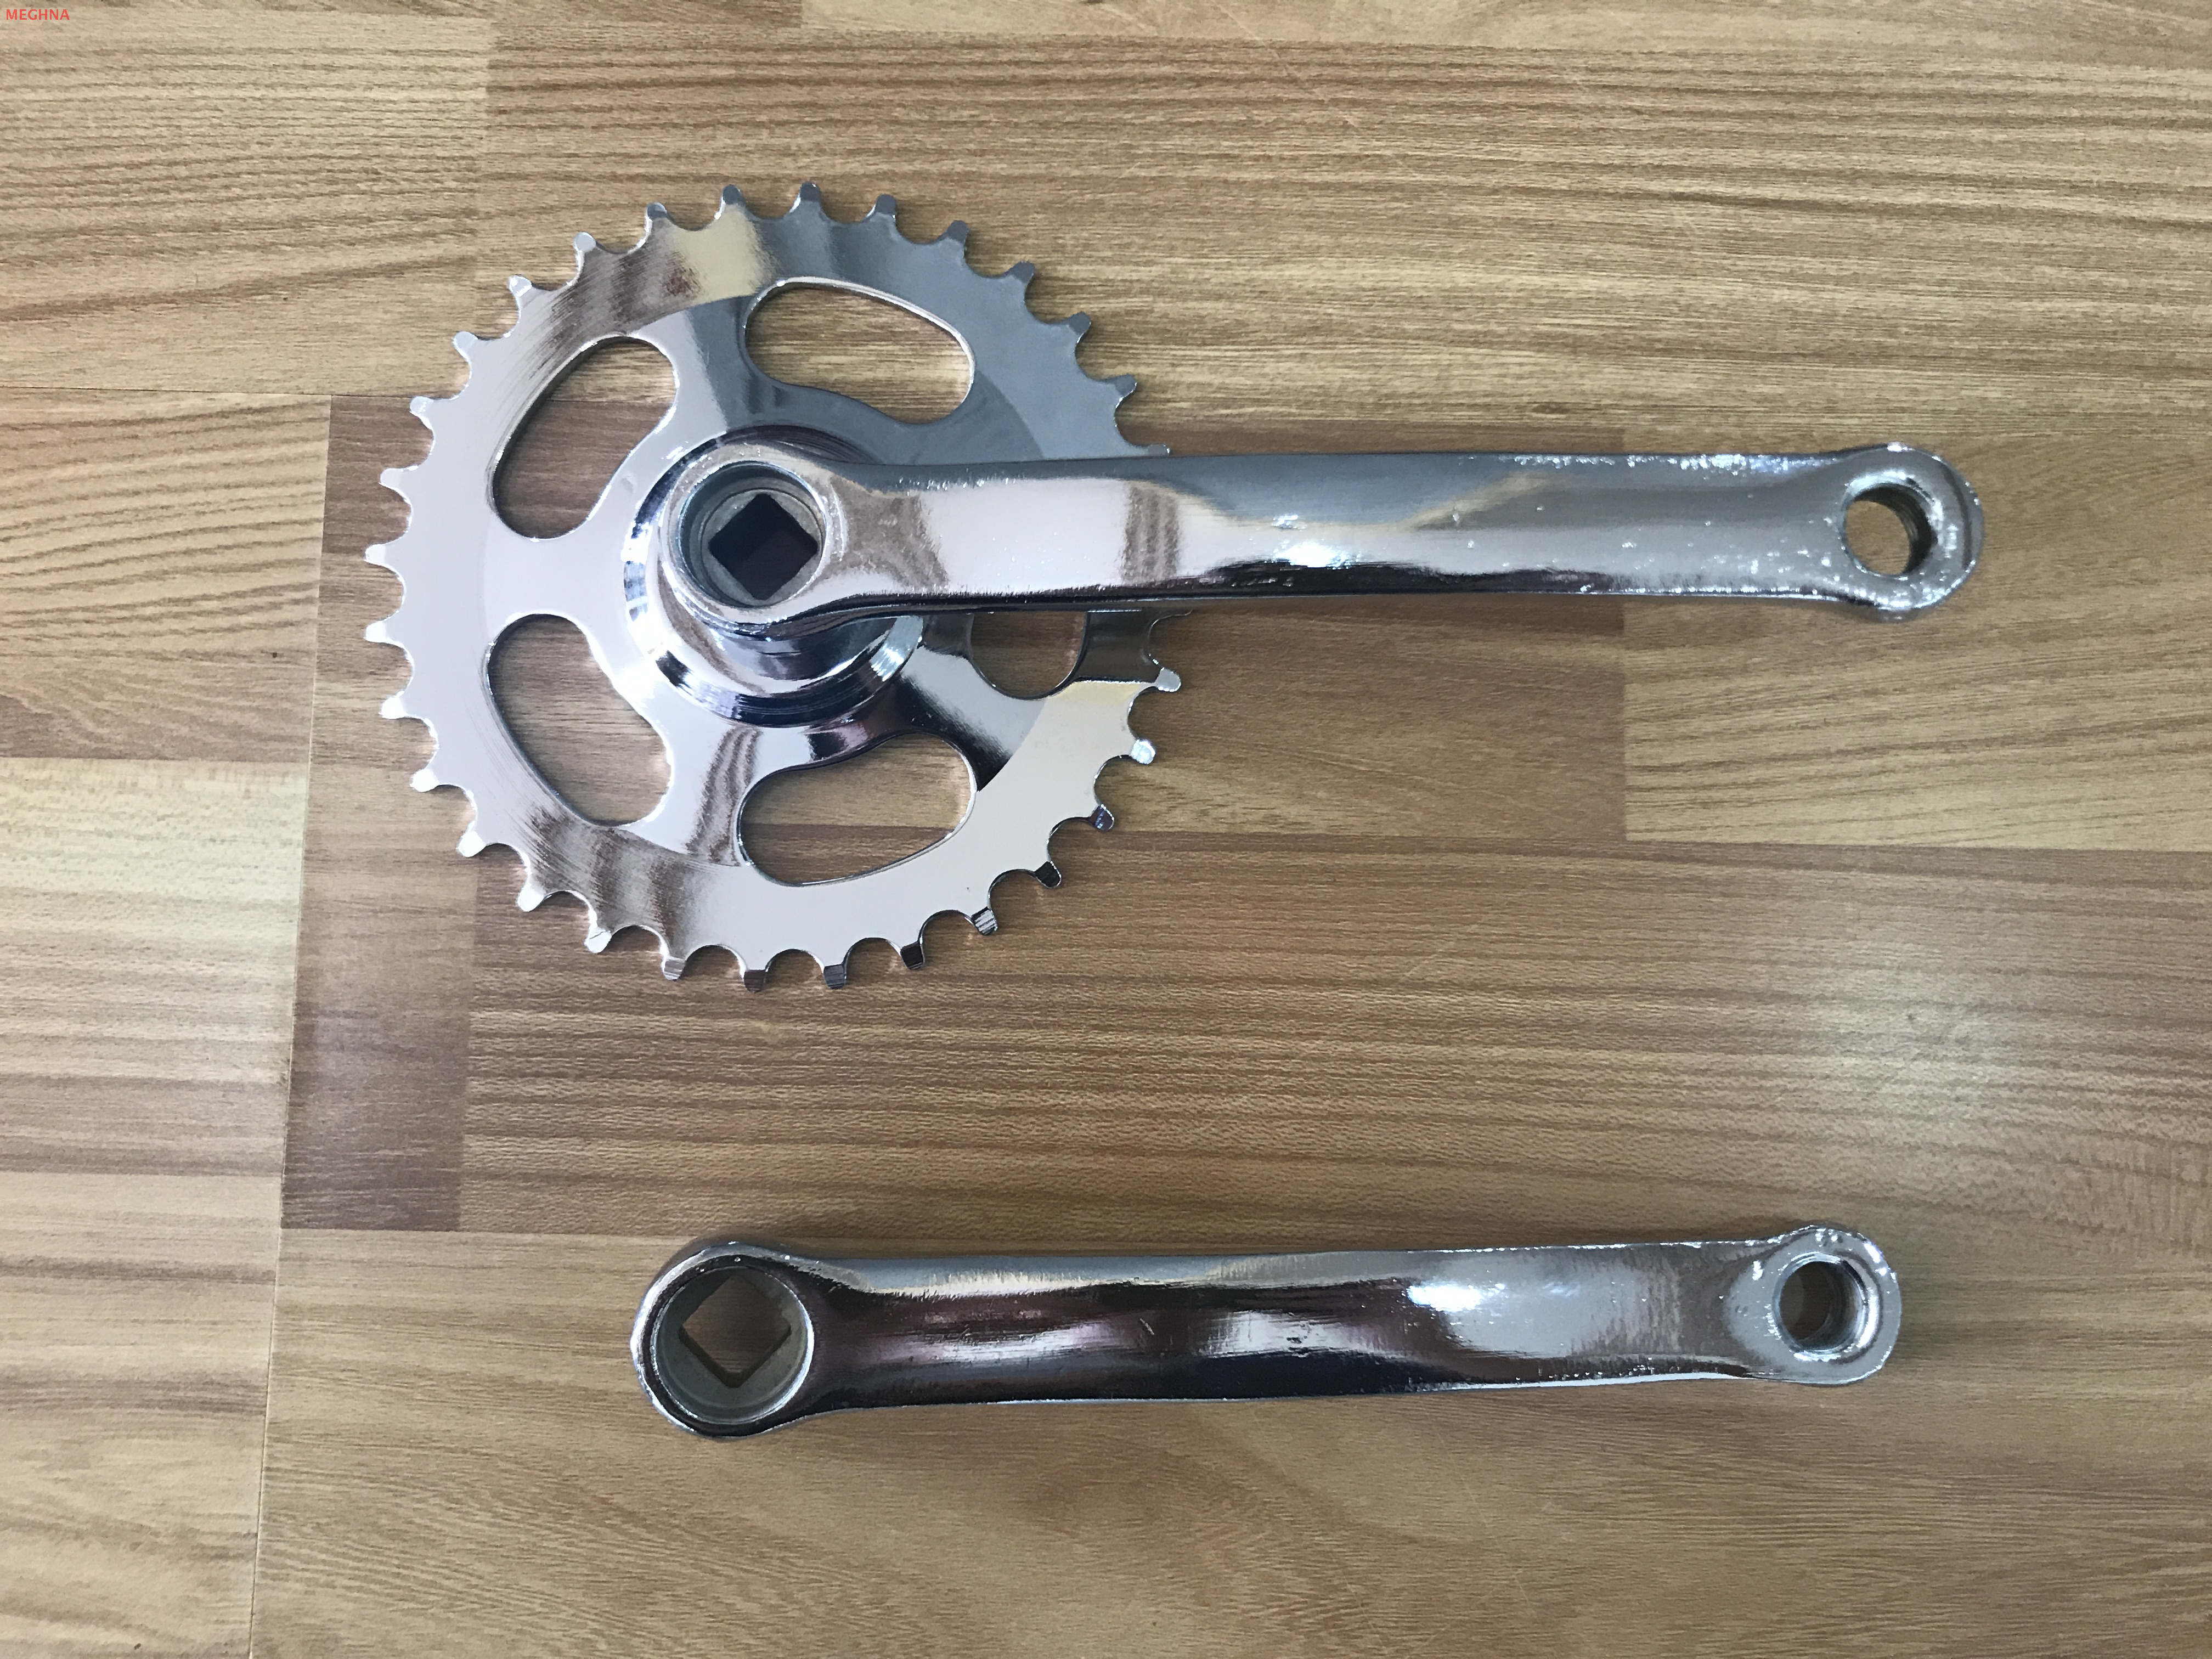 CS-01 Bicycle chainwheel and crankset